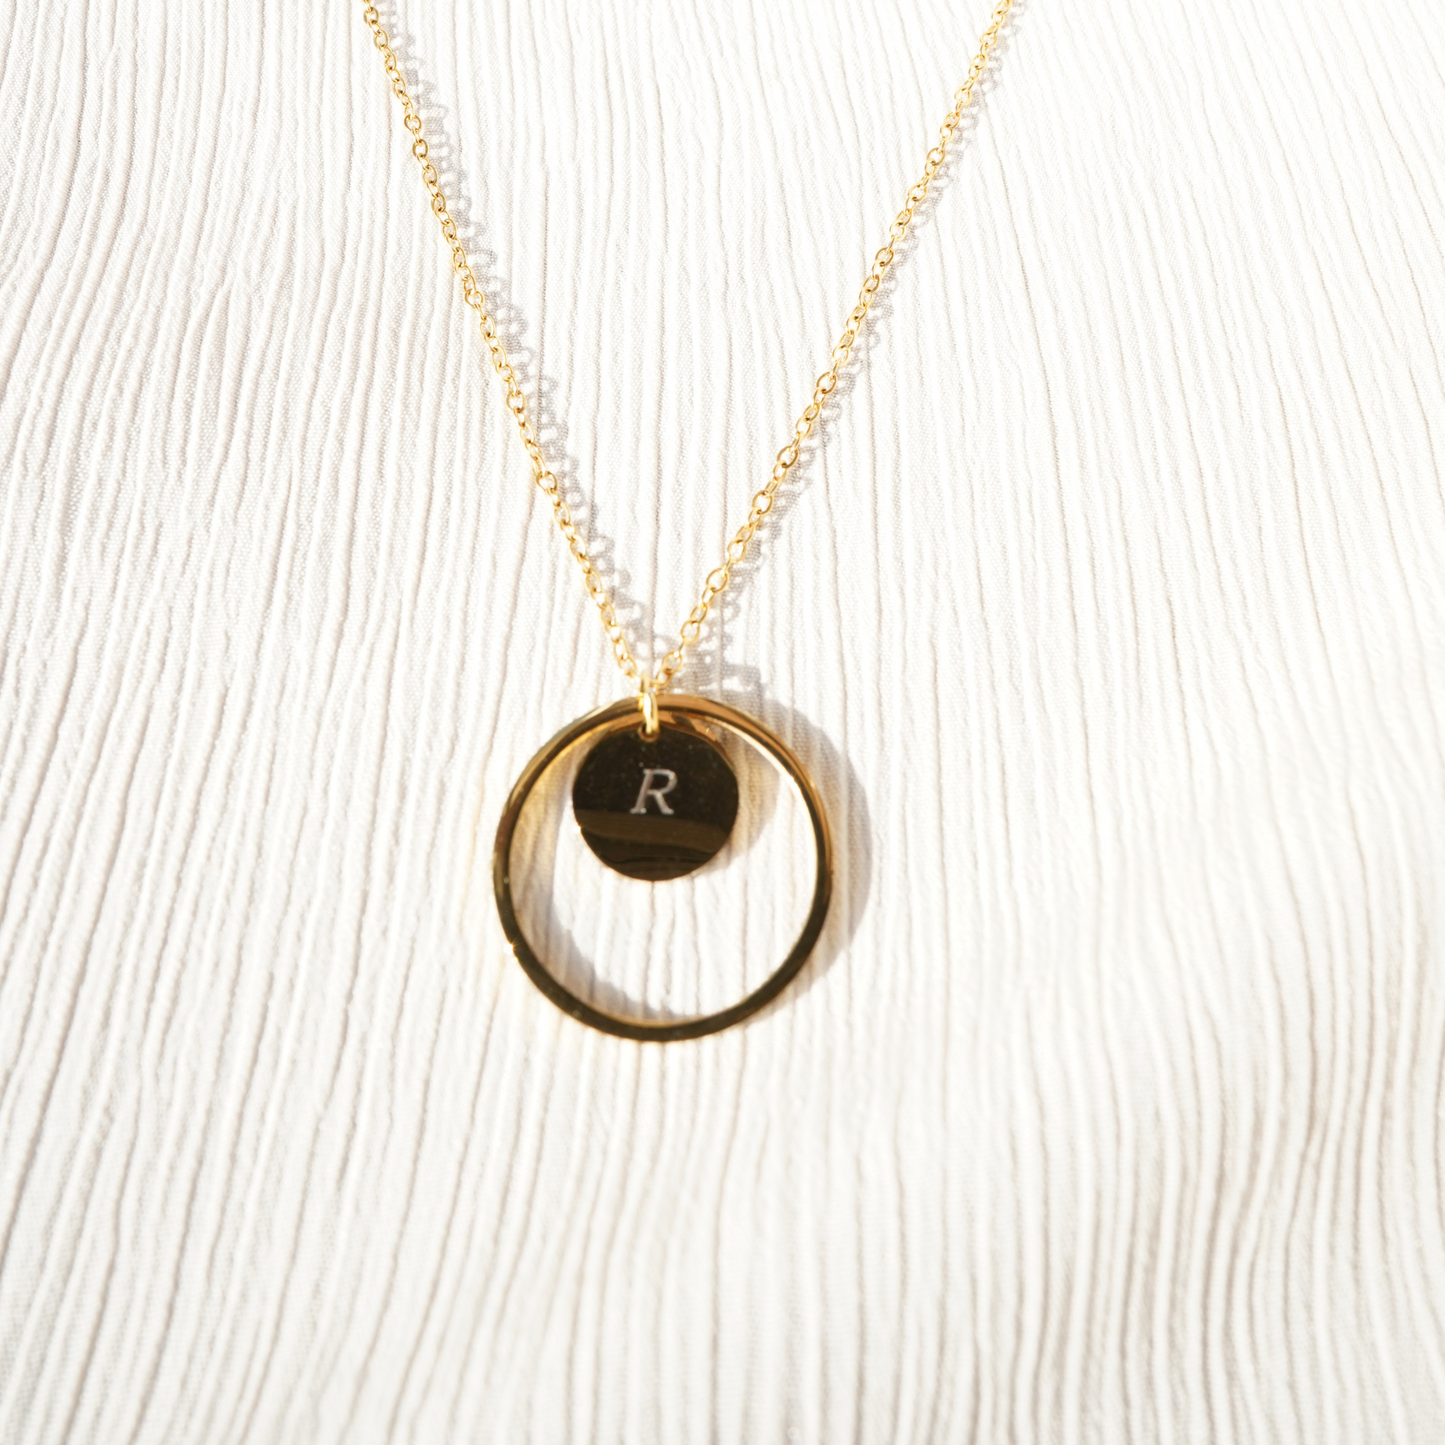 Personalized (12mm Pendant w/circle charm) 18K Gold Vermeil Pendant Necklace